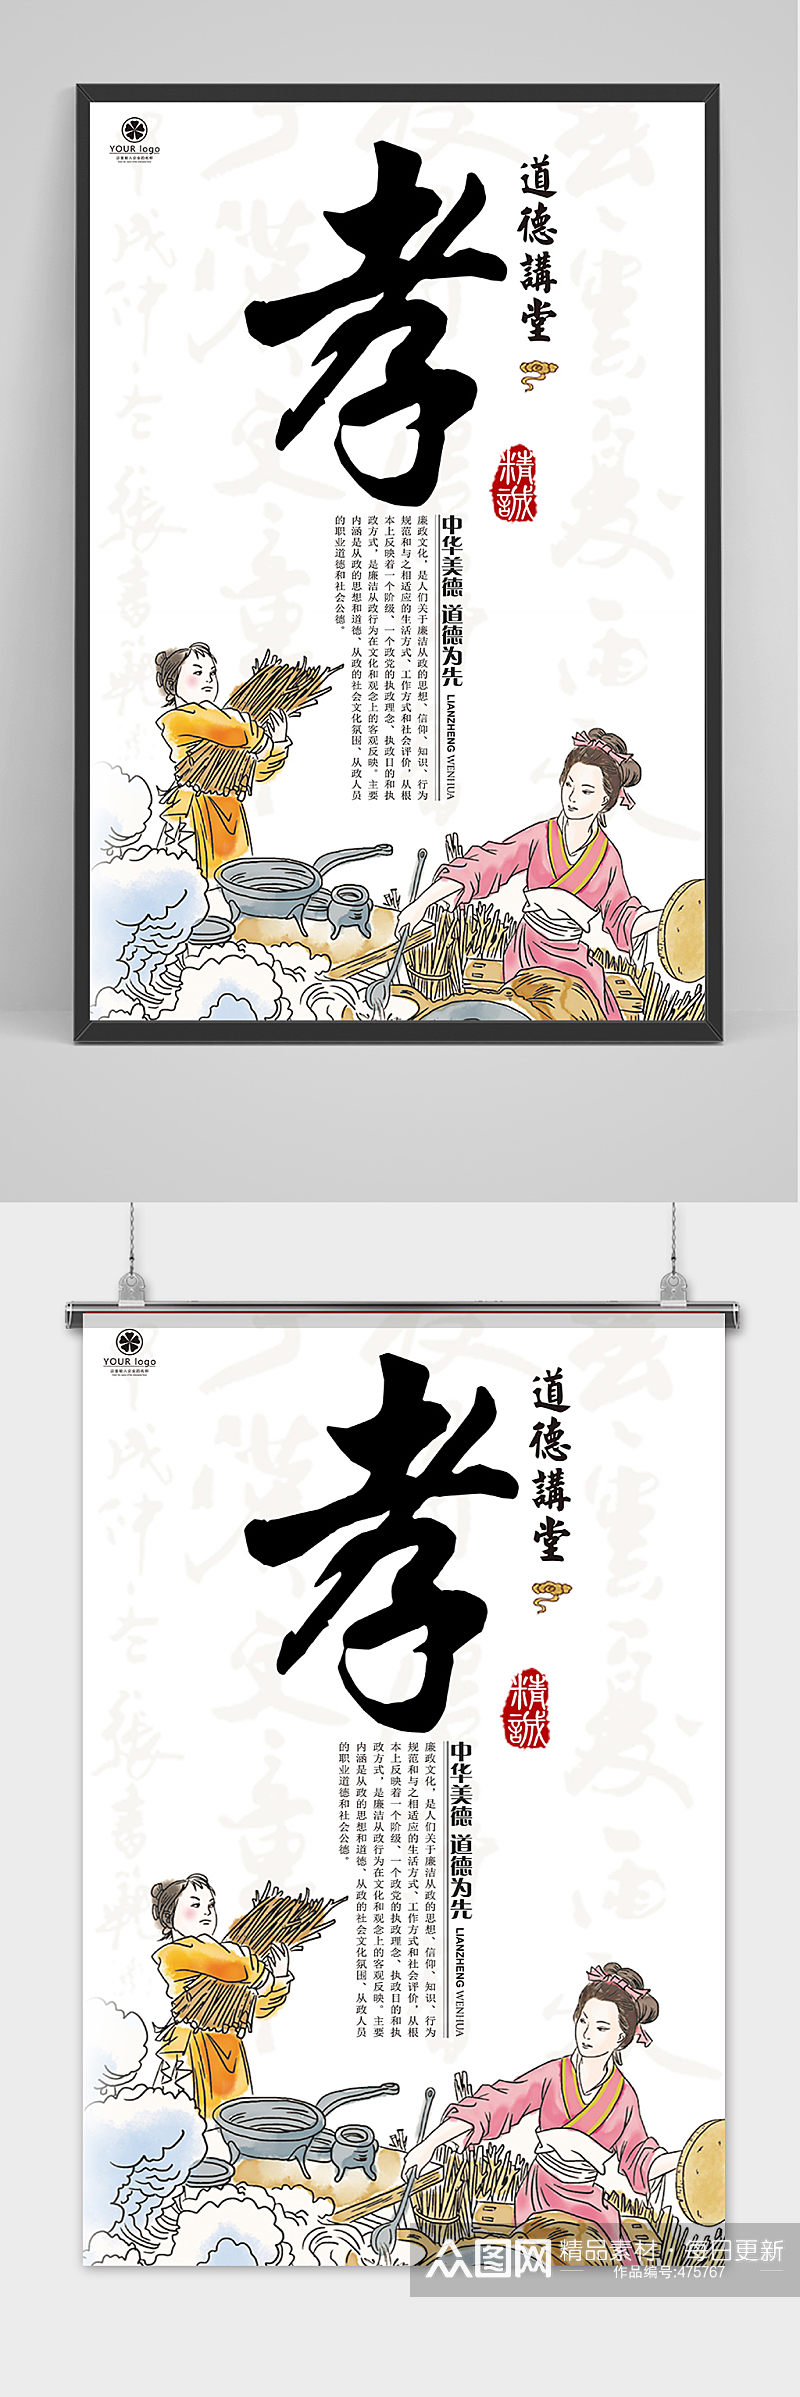 中国传统美德孝文化海报素材